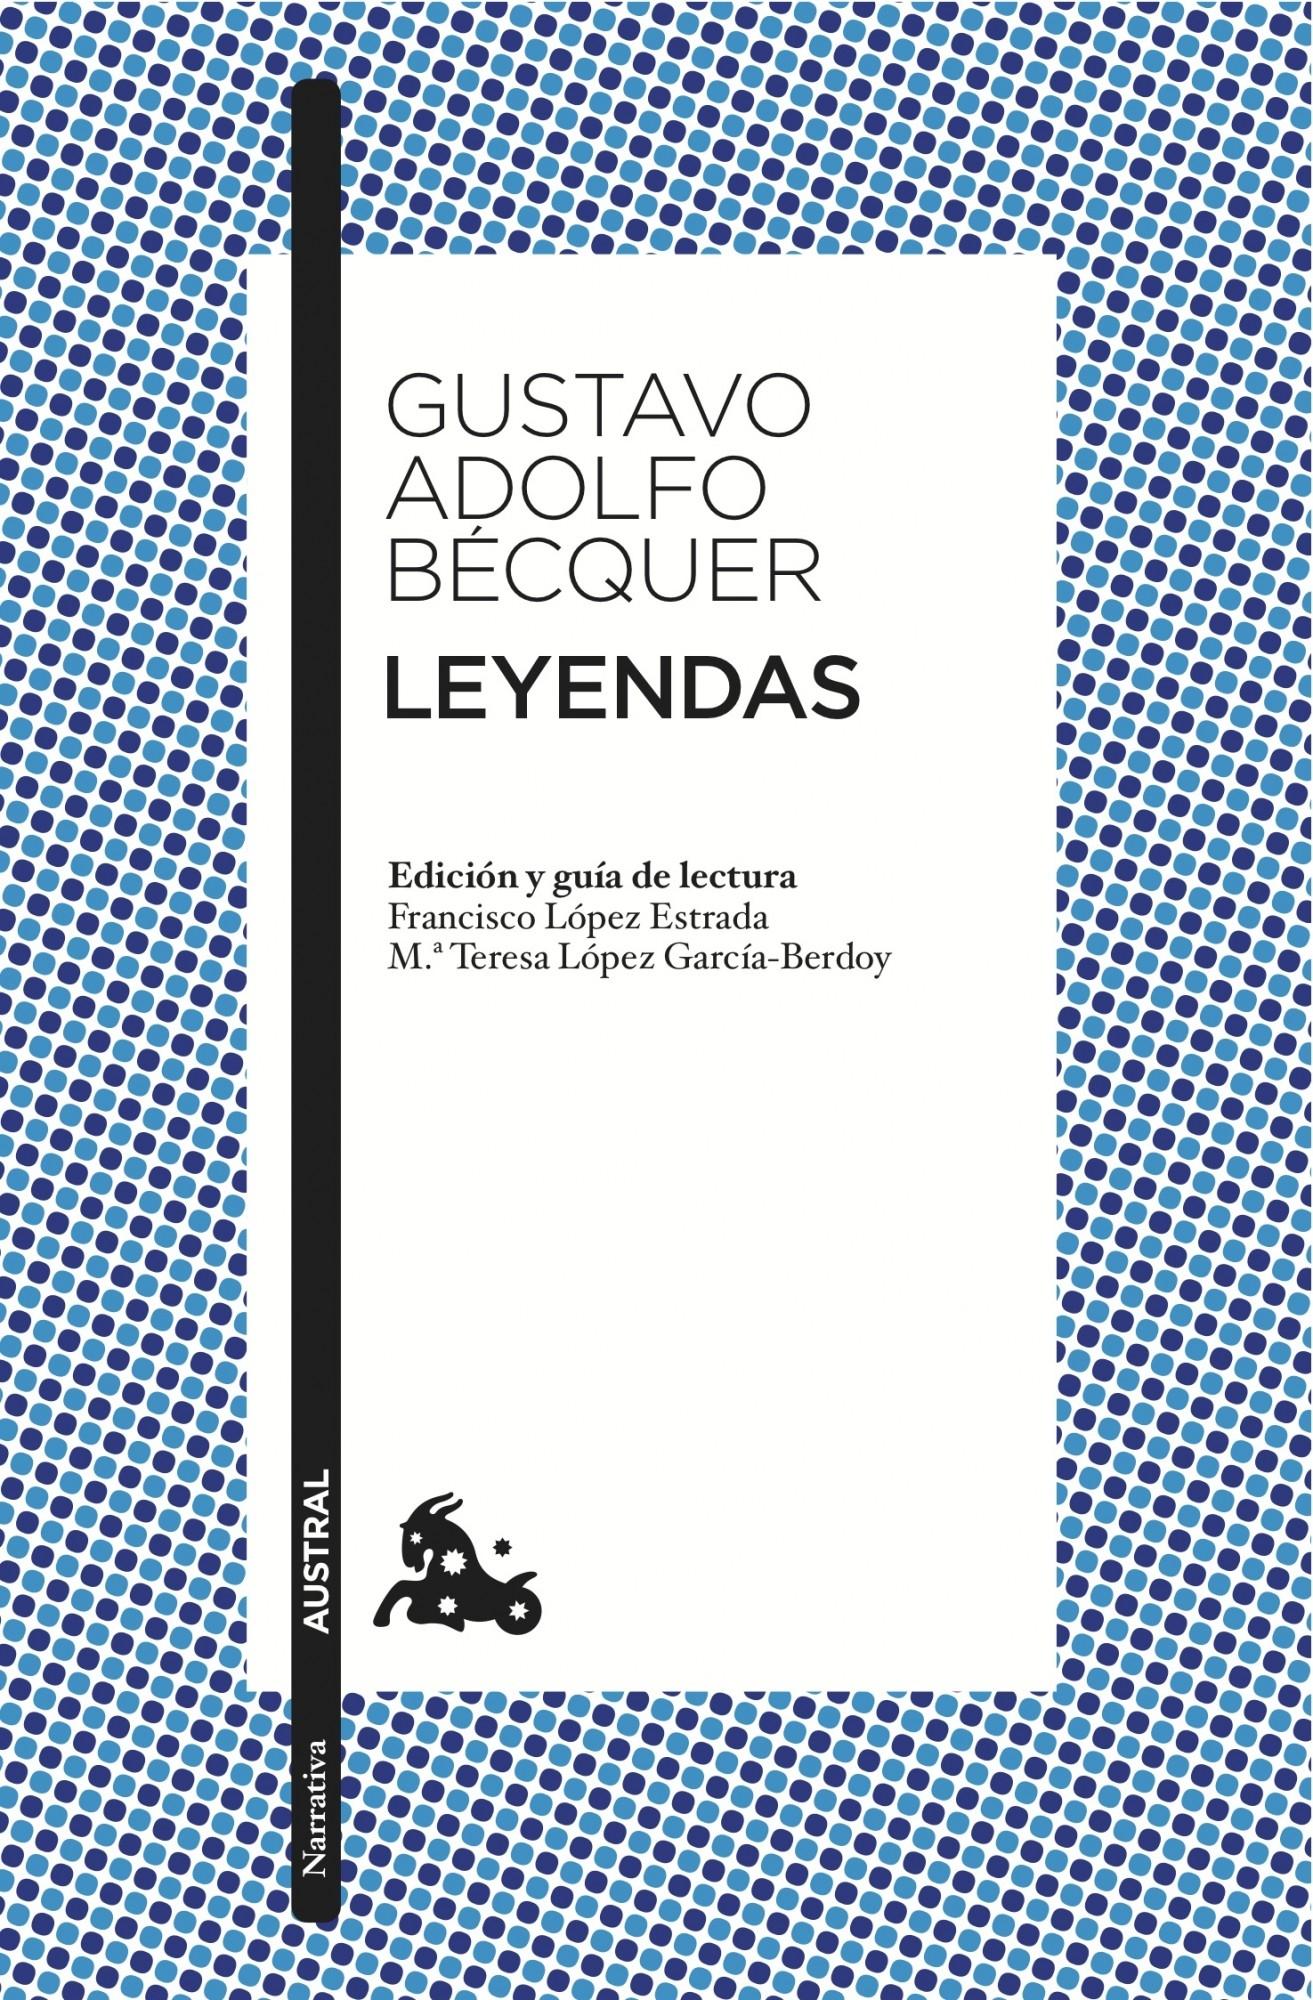 Leyendas "Edición de Francisco López Estrada y Mª Teresa López Gracía-Berdoy". 